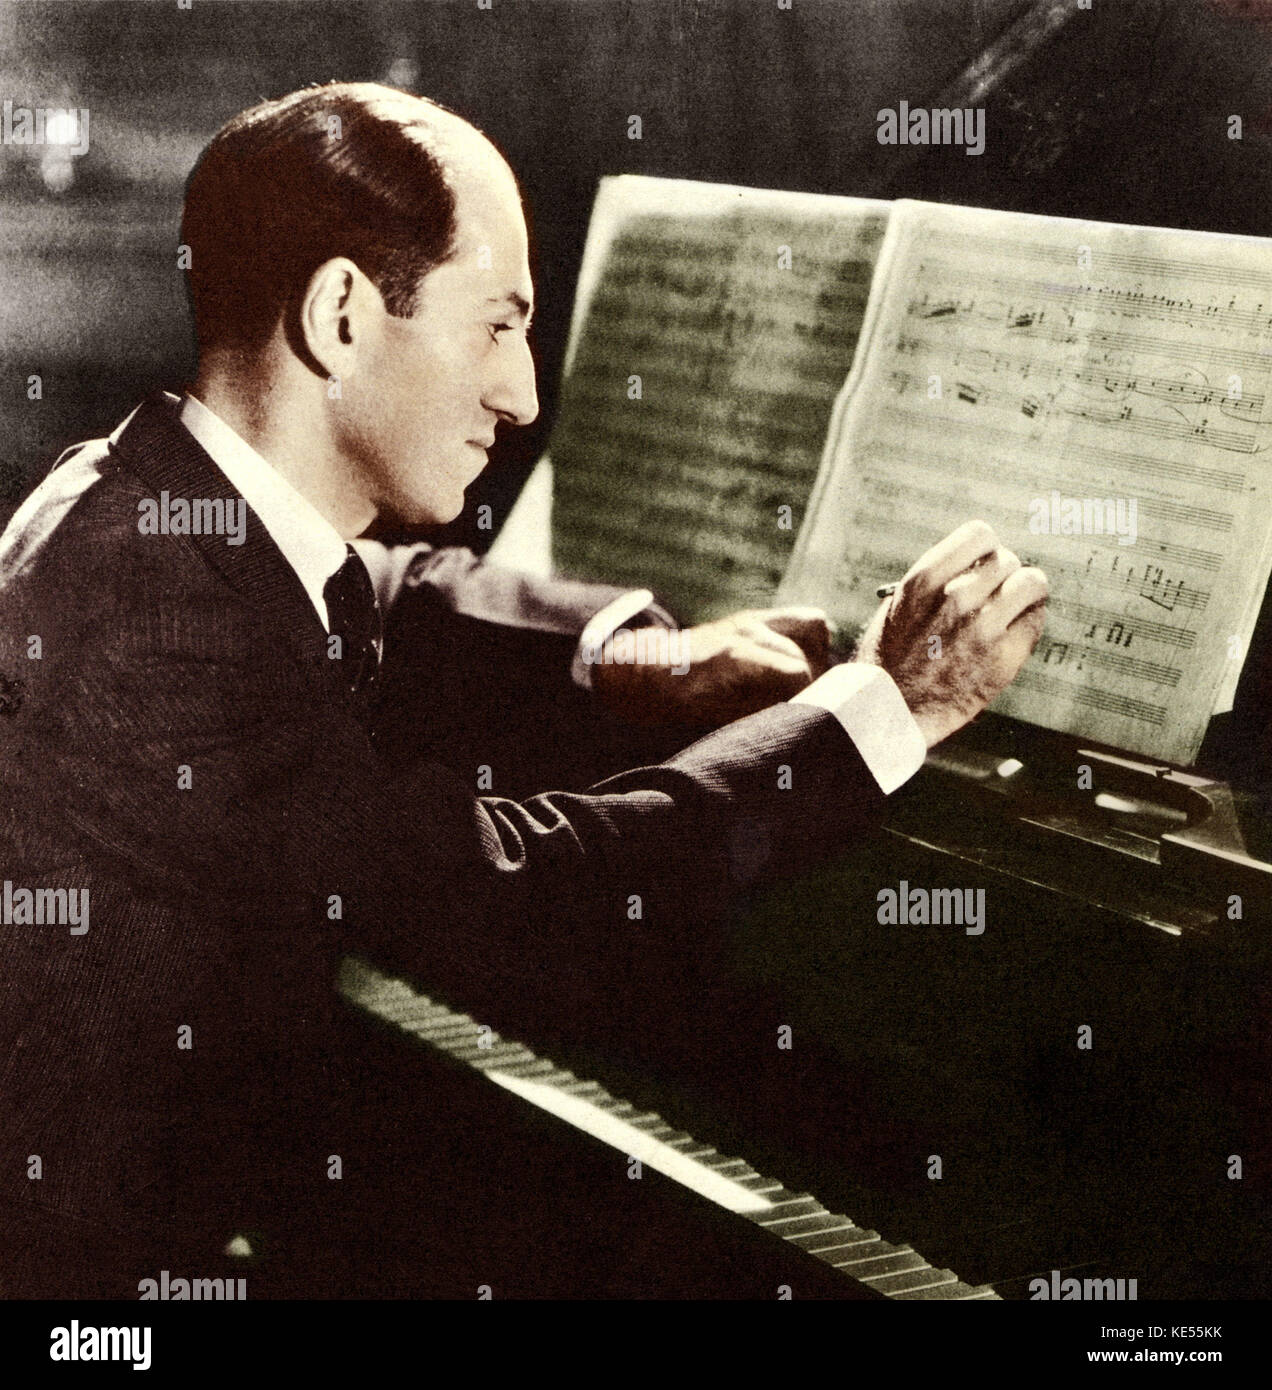 George Gershwin componiendo en el piano. Compositor americano, 1898-1937. Colourised versión. Foto de stock